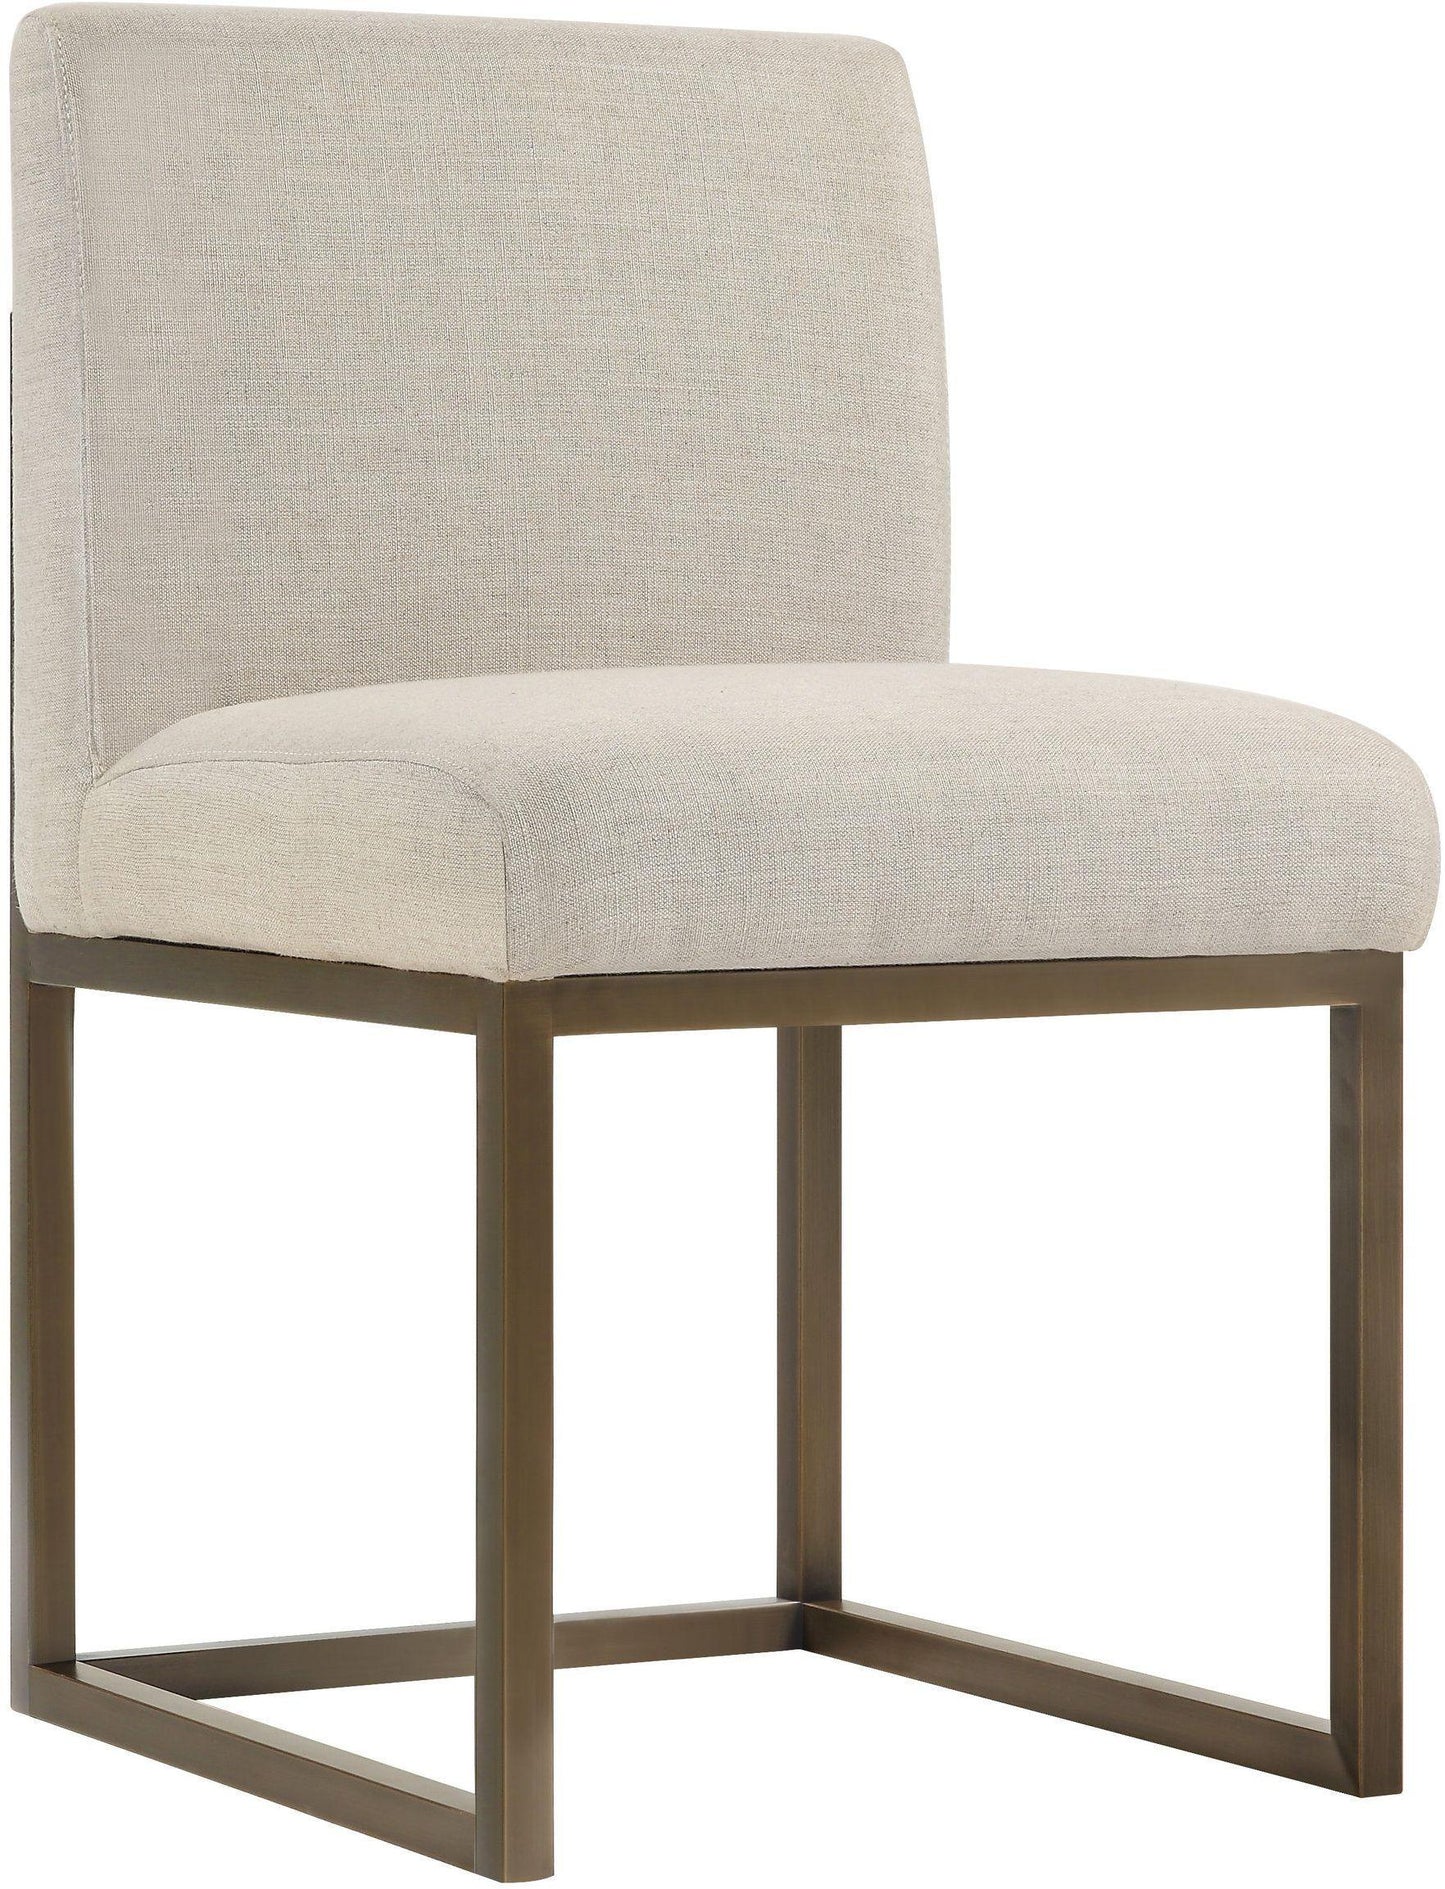 Tov Furniture Haute Beige Linen Chair Brass